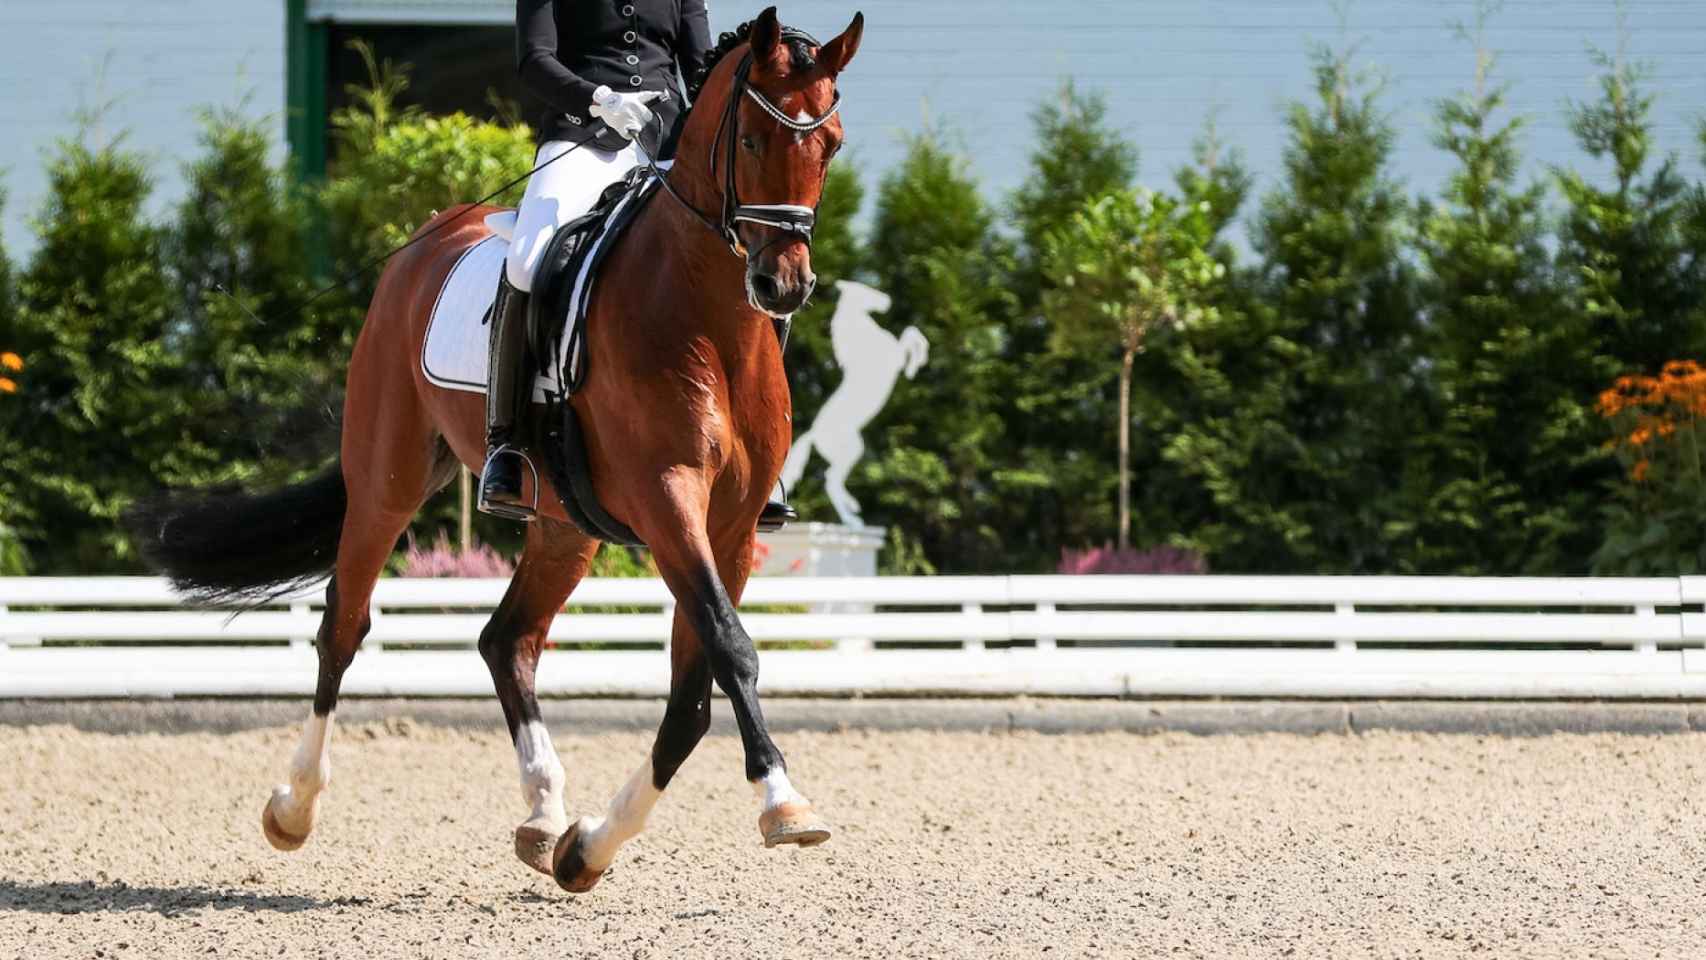 Fotografía de un caballo durante una competición ecuestre